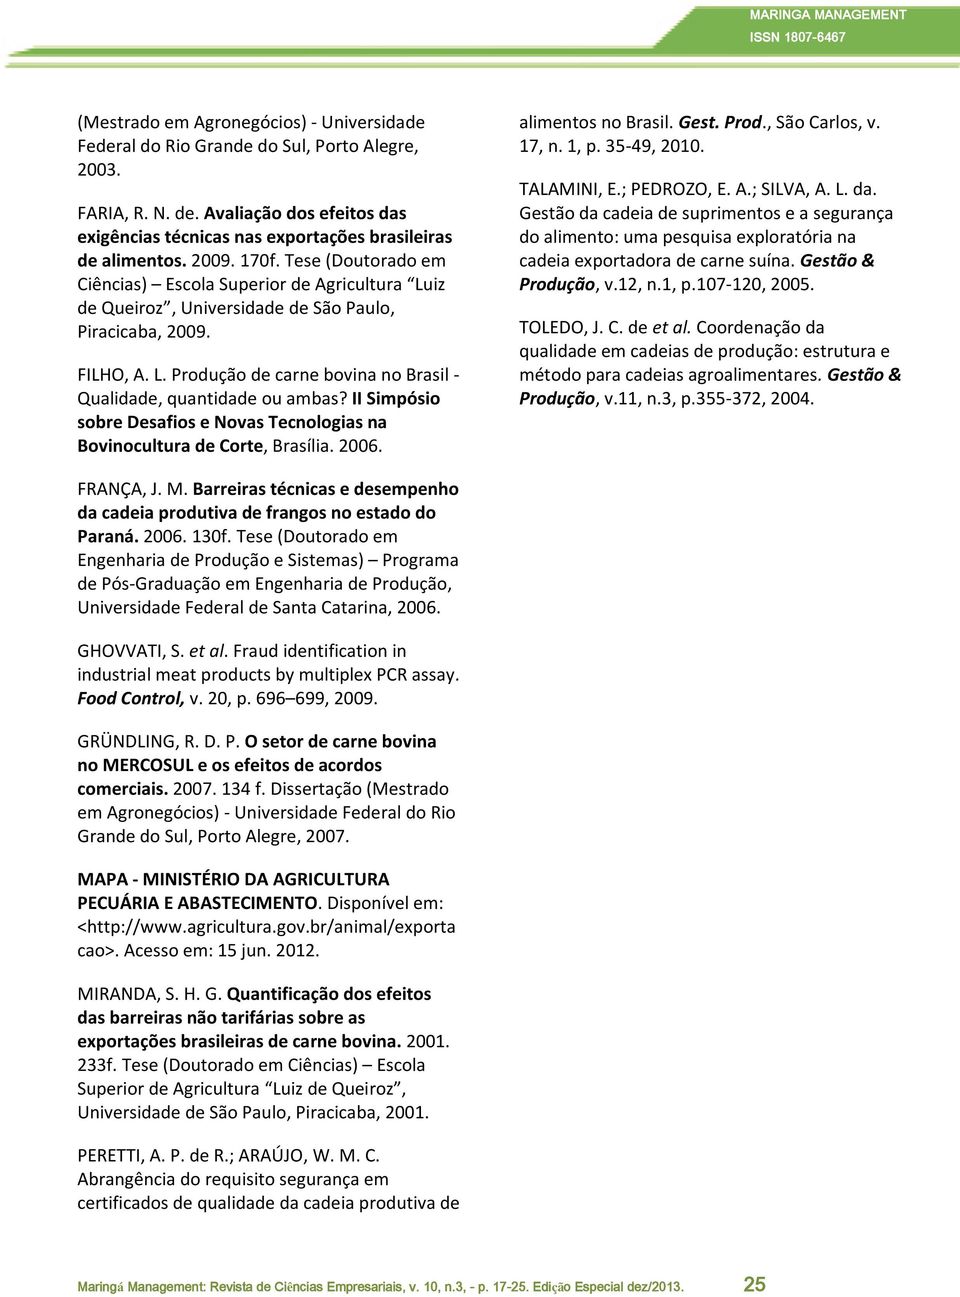 II Simpósio sobre Desafios e Novas Tecnologias na Bovinocultura de Corte, Brasília. 2006. alimentos no Brasil. Gest. Prod., São Carlos, v. 17, n. 1, p. 35-49, 2010. TALAMINI, E.; PEDROZO, E. A.